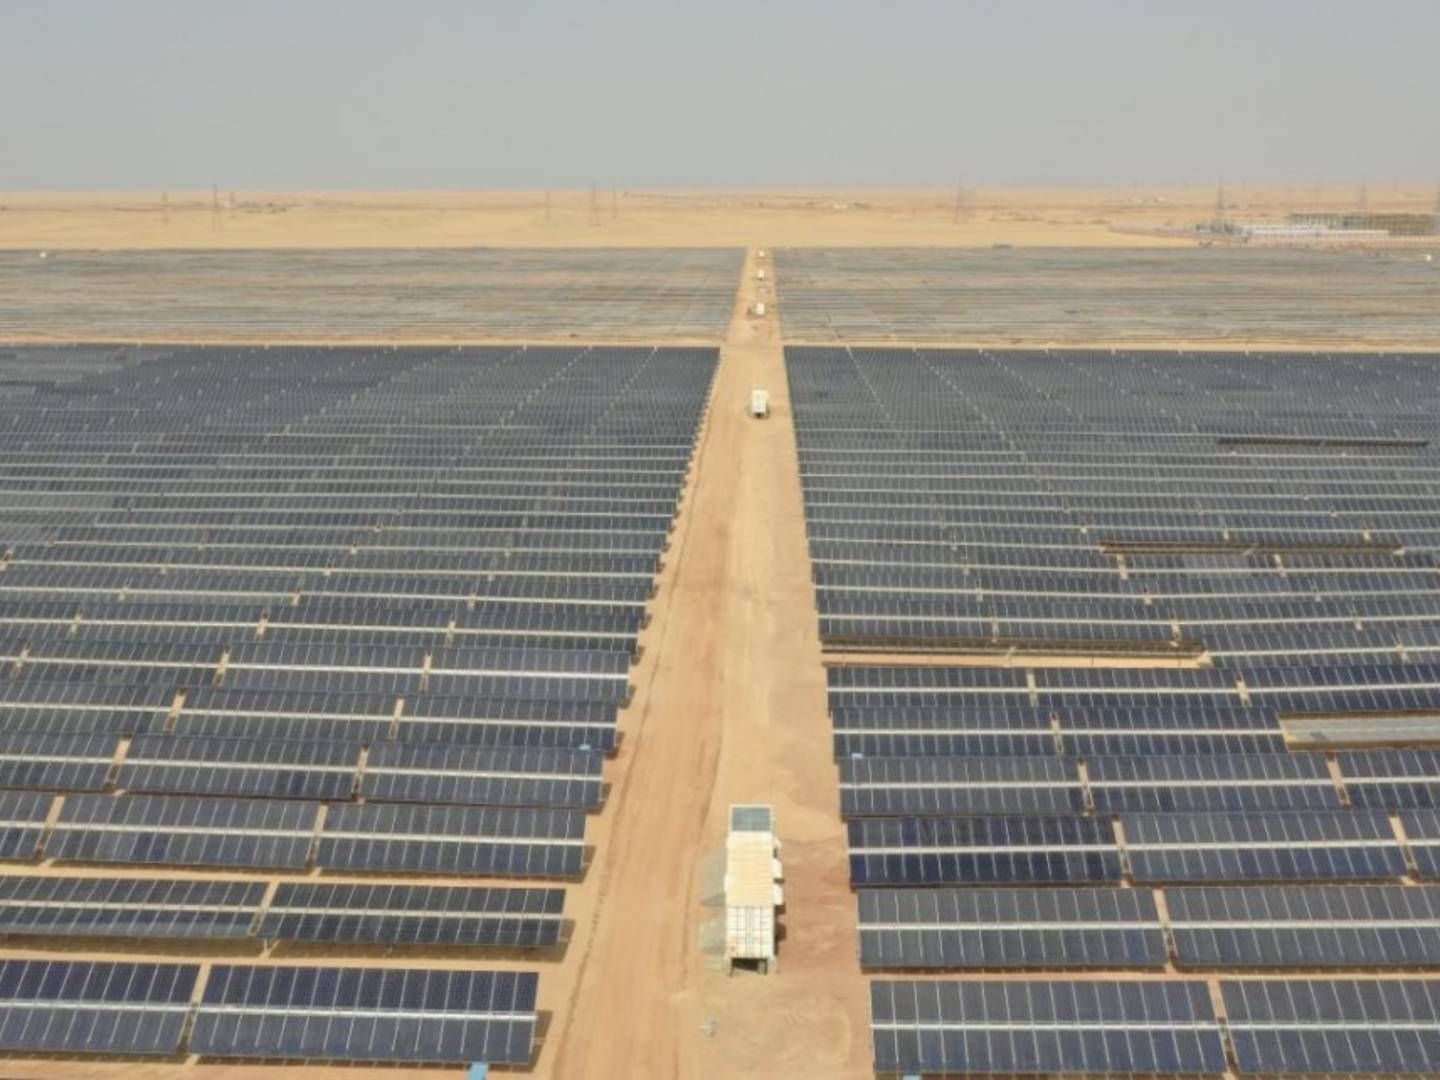 Egyptiske Ben Ban på 390 MW er den største solcellepark i Scatec Solars portefølje. | Foto: PR / Scatec Solar